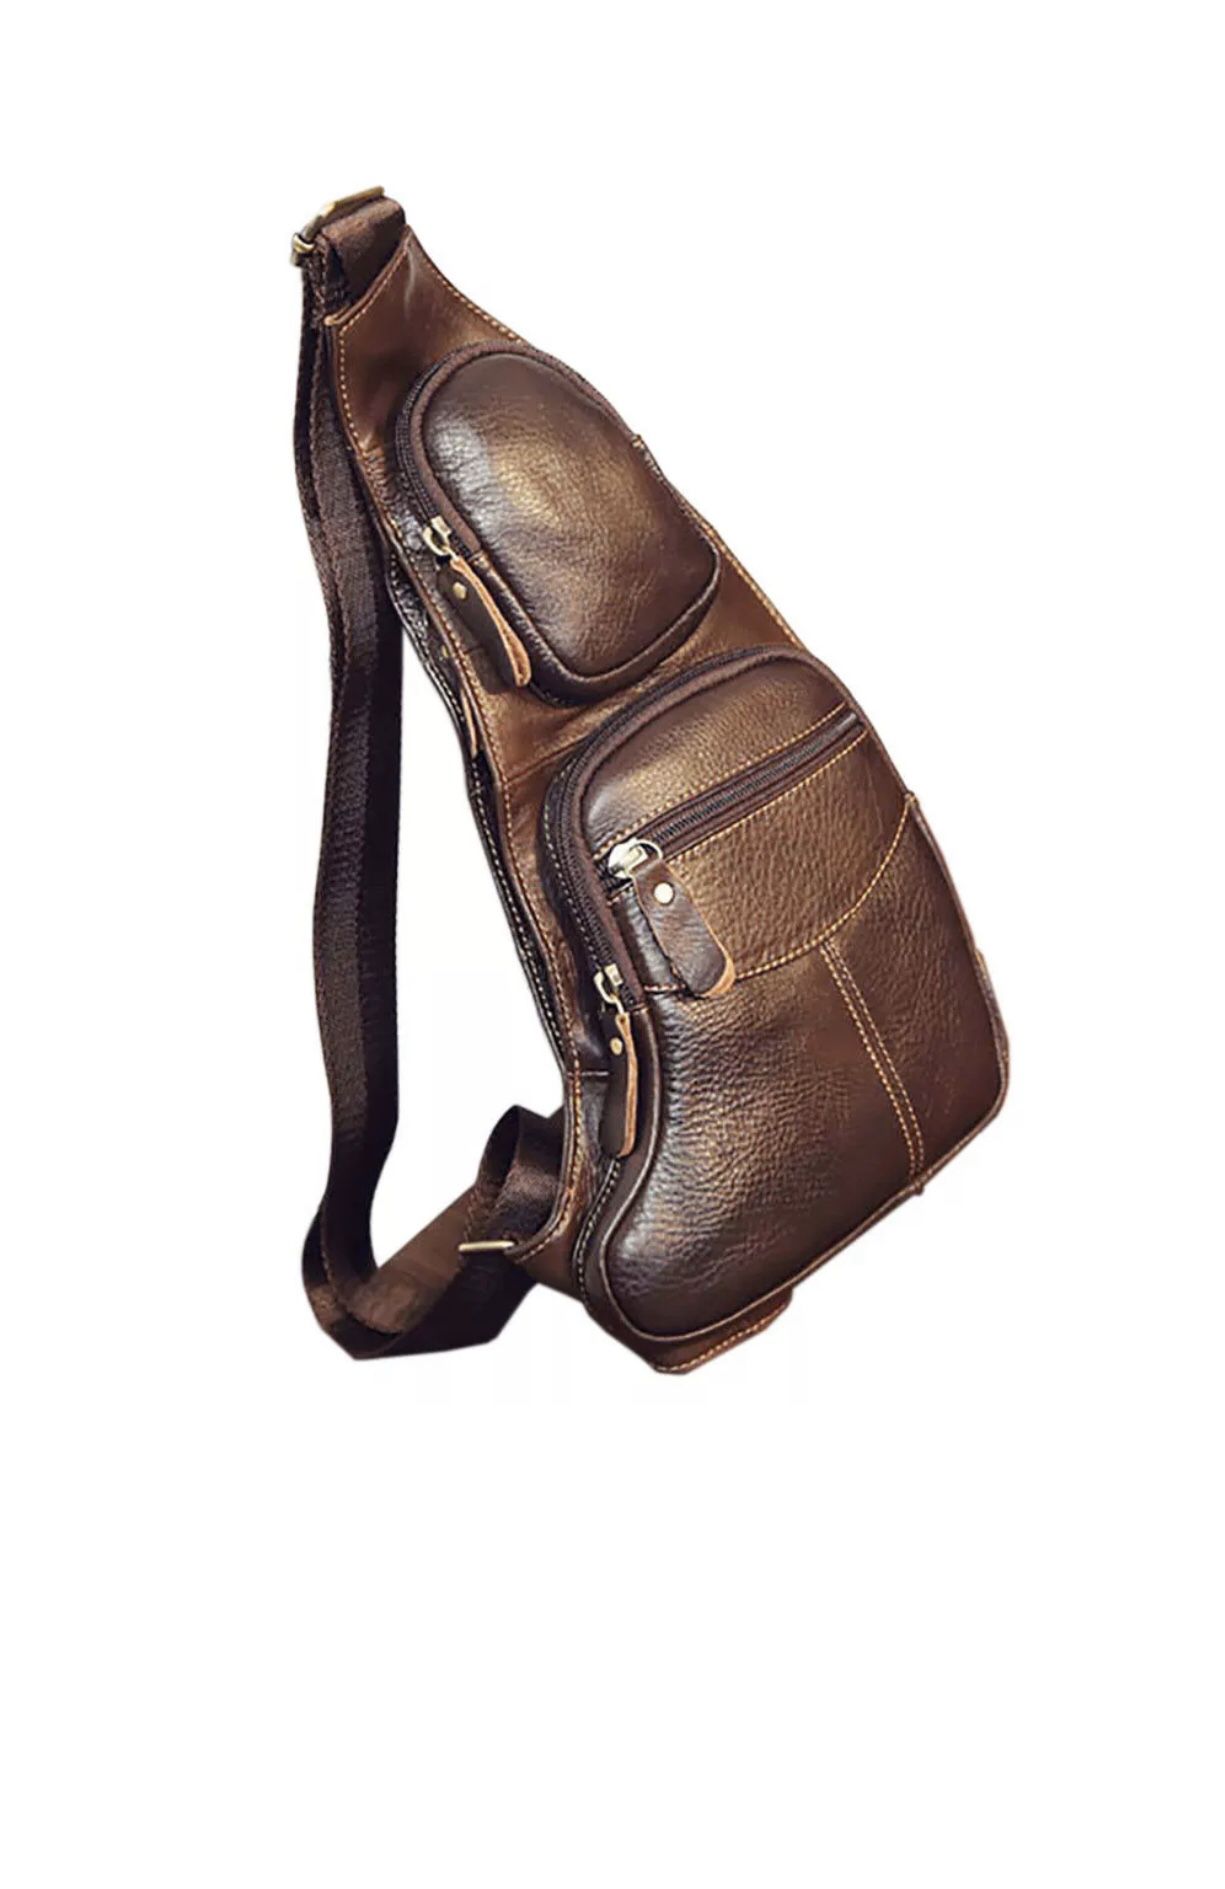 Men Vintage Leather Chest Sling Bag Travel Backpack Crossbody Shoulder Day Pack